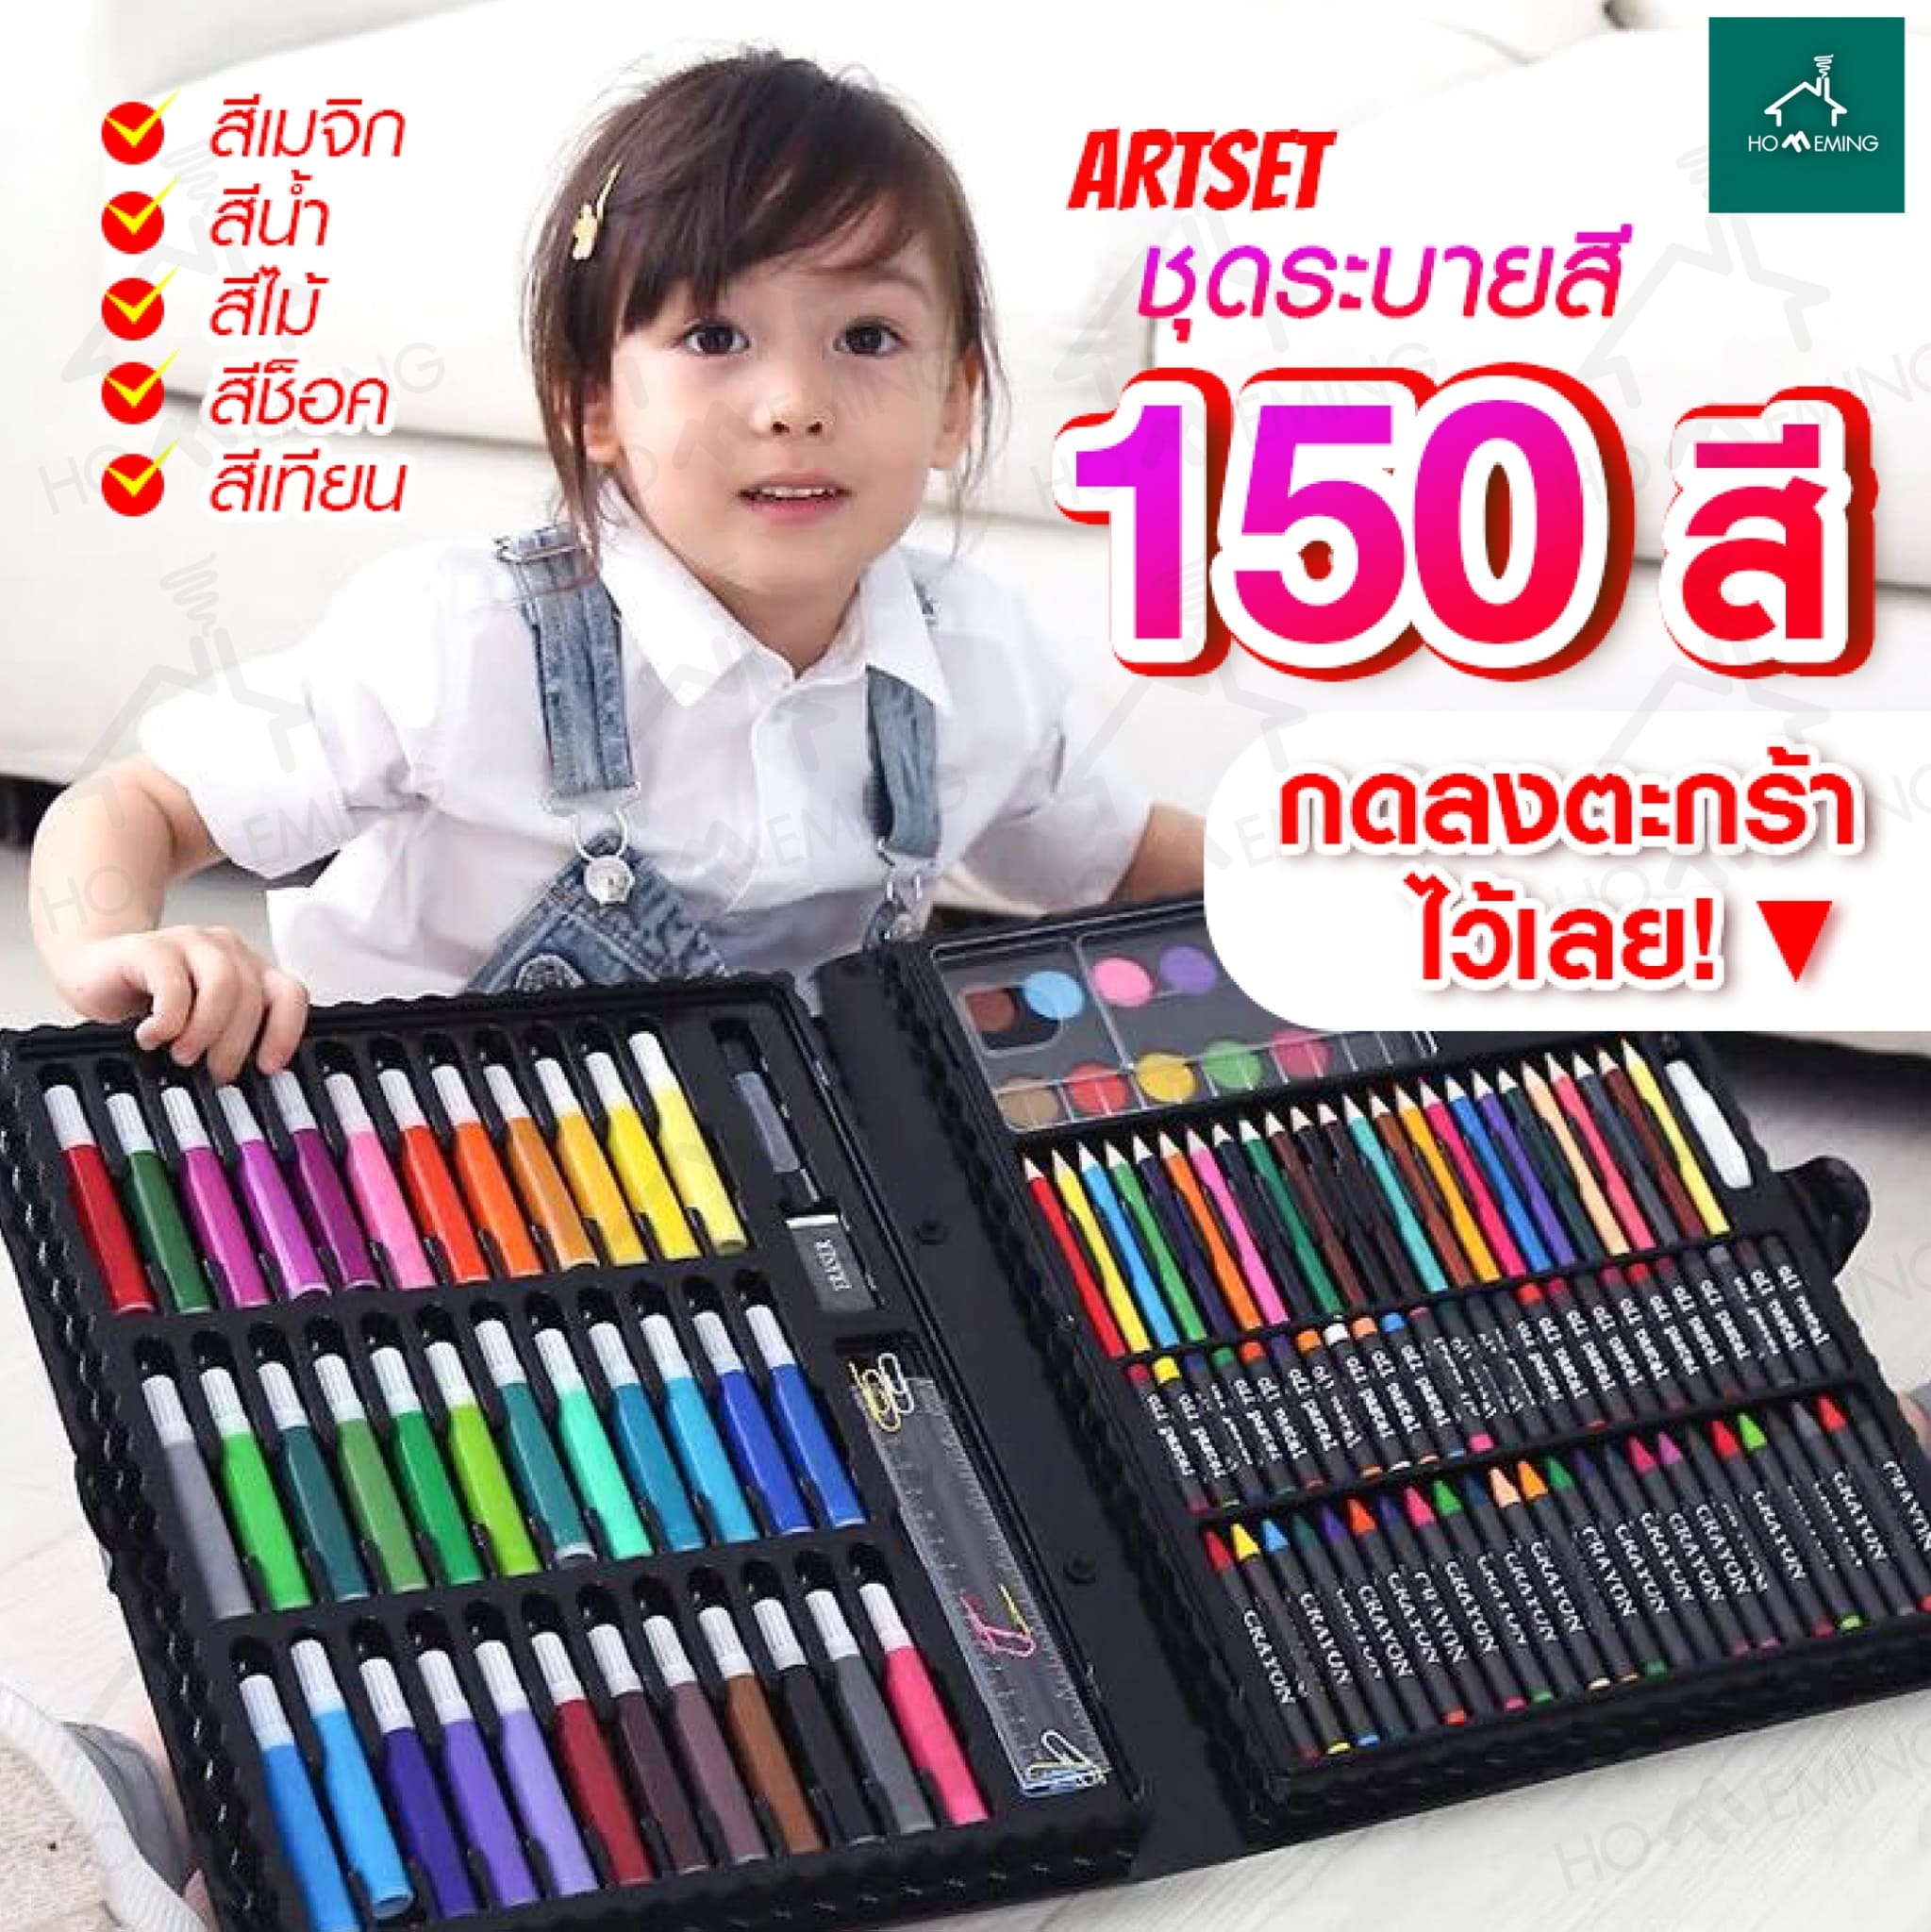 🌈6พาเลทชุดระบายสี 150 ชิ้น สีไม้ สีเทียน สีน้ำ สีเมจิ ชุดกล่องสี  🌈ชุดกล่องระบายสี ชุดเครื่องเขียนสำหรับเด็ก 🎨🎨